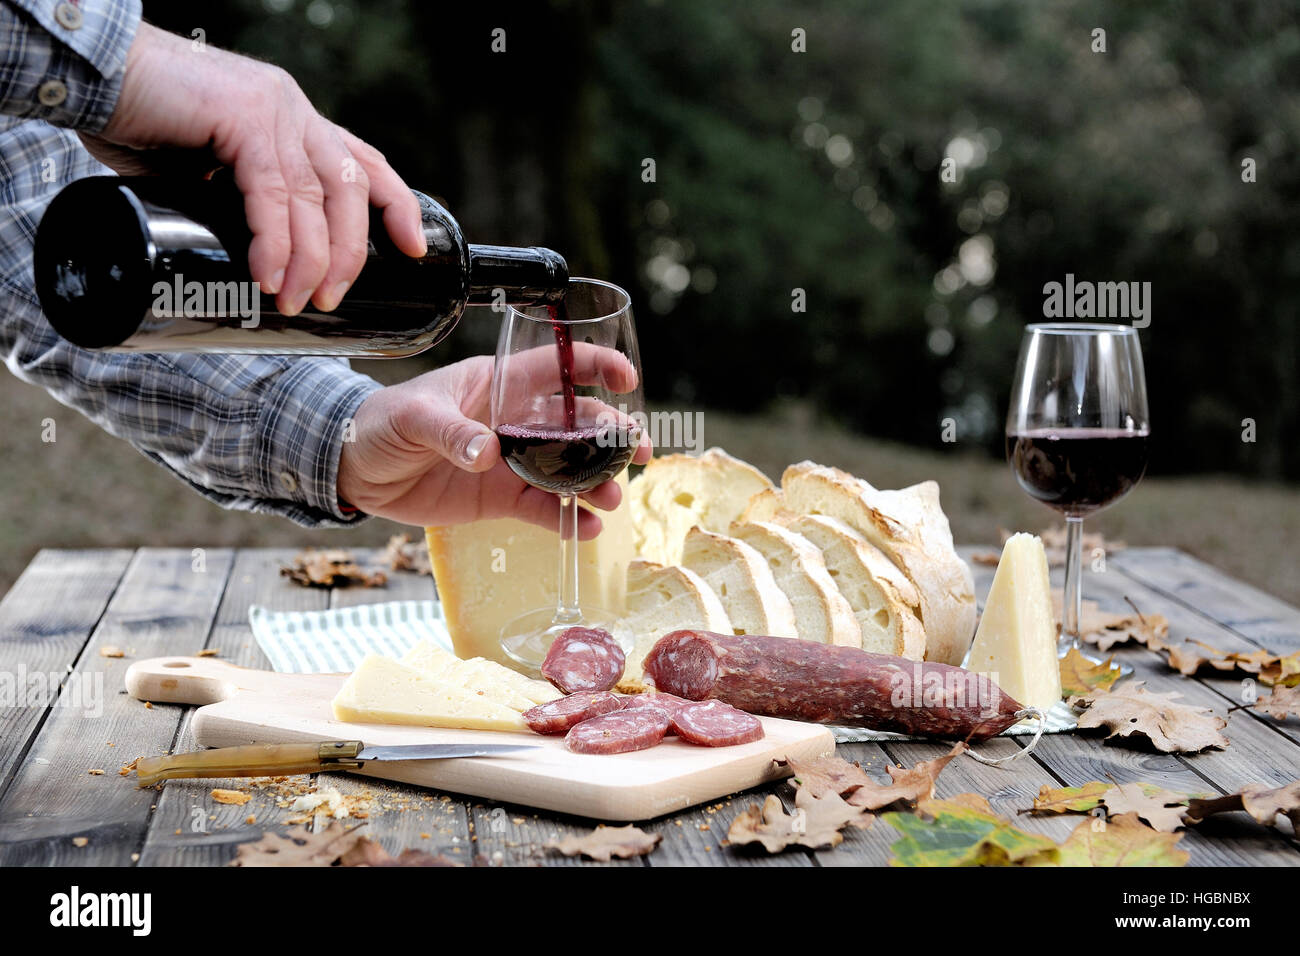 Le mani che versano il vino nel calice mentre mangia in campagna con pane, formaggio e salsicce. Foto Stock